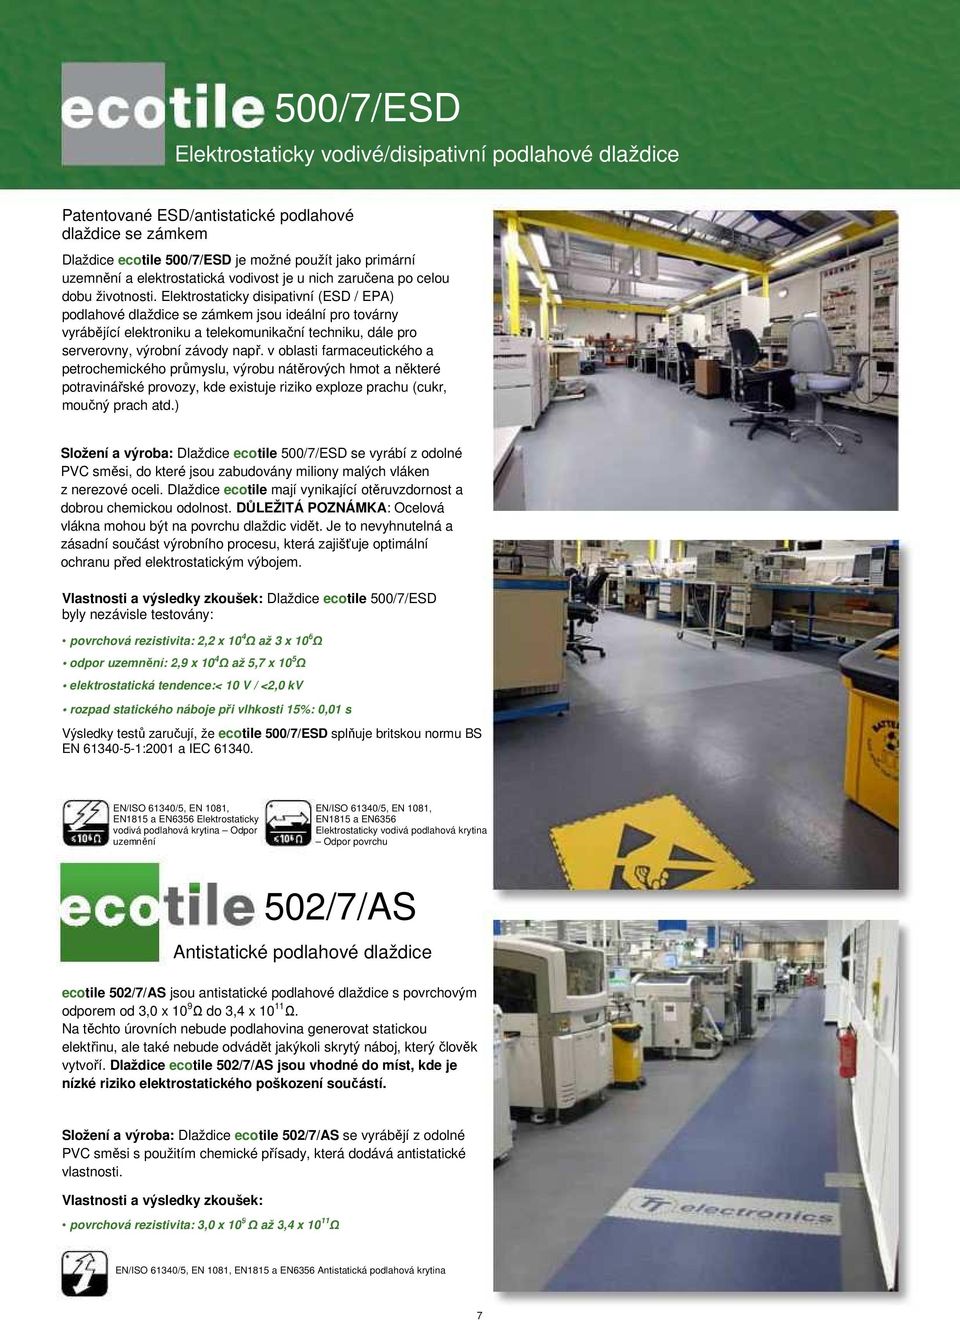 Elektrostaticky disipativní (ESD / EPA) podlahové dlaždice se zámkem jsou ideální pro továrny vyrábějící elektroniku a telekomunikační techniku, dále pro serverovny, výrobní závody např.